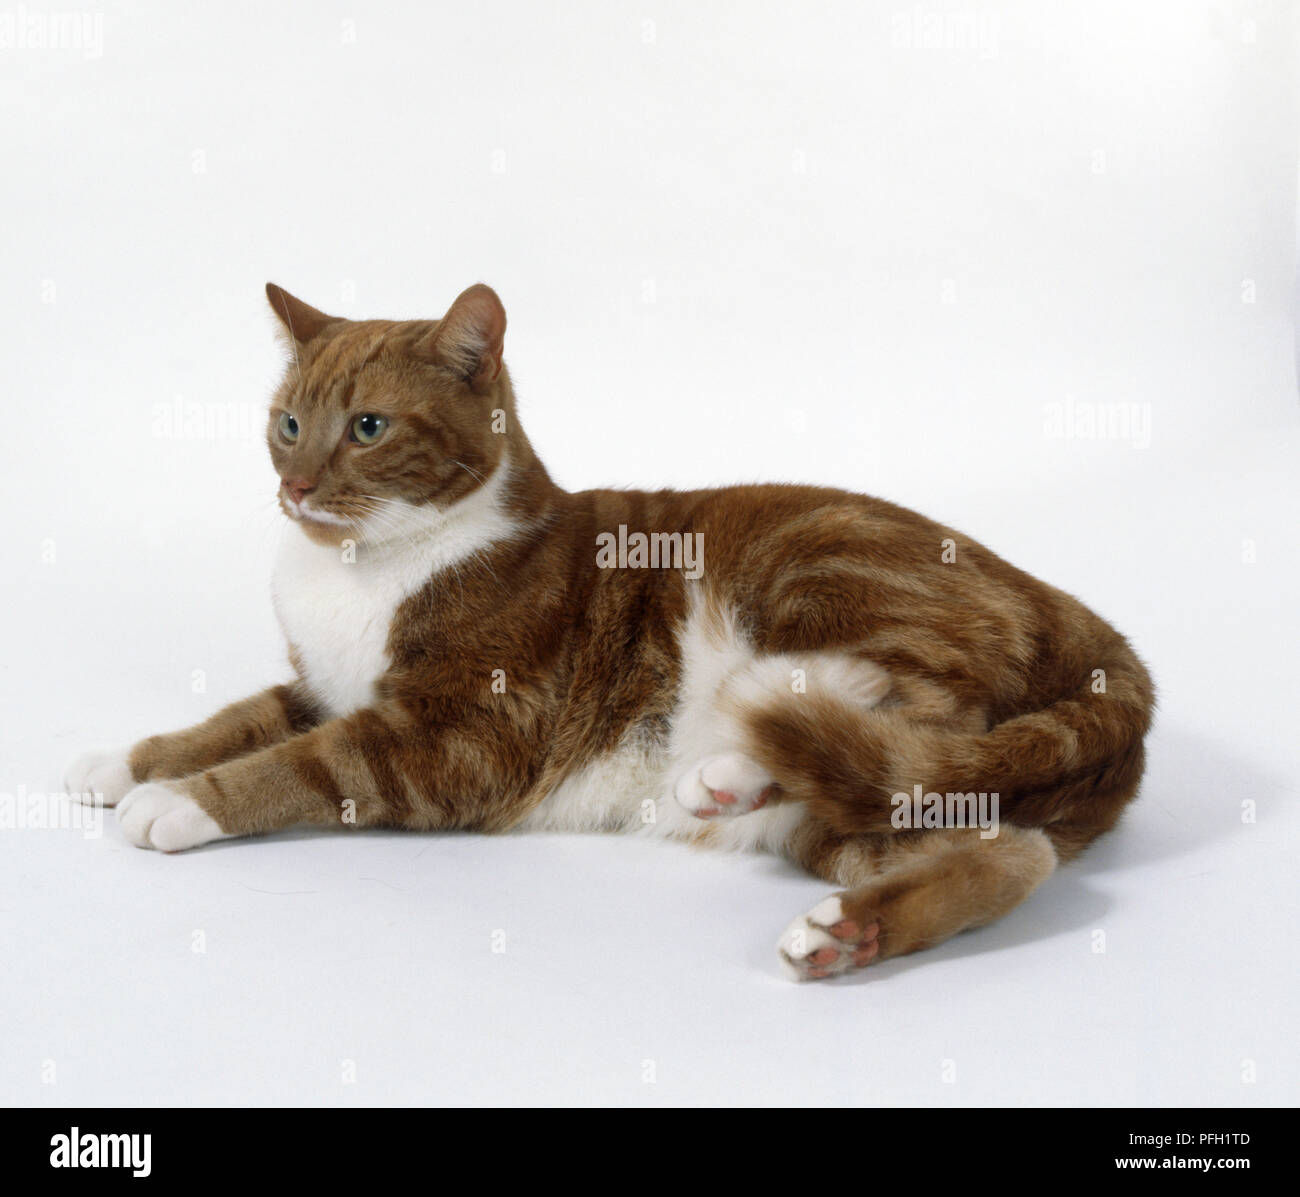 Classico Rosso tabby e bianco non-pedigree shorthaired cat con cipiglio più scure linee sulla fronte, sdraiato, vista laterale. Foto Stock